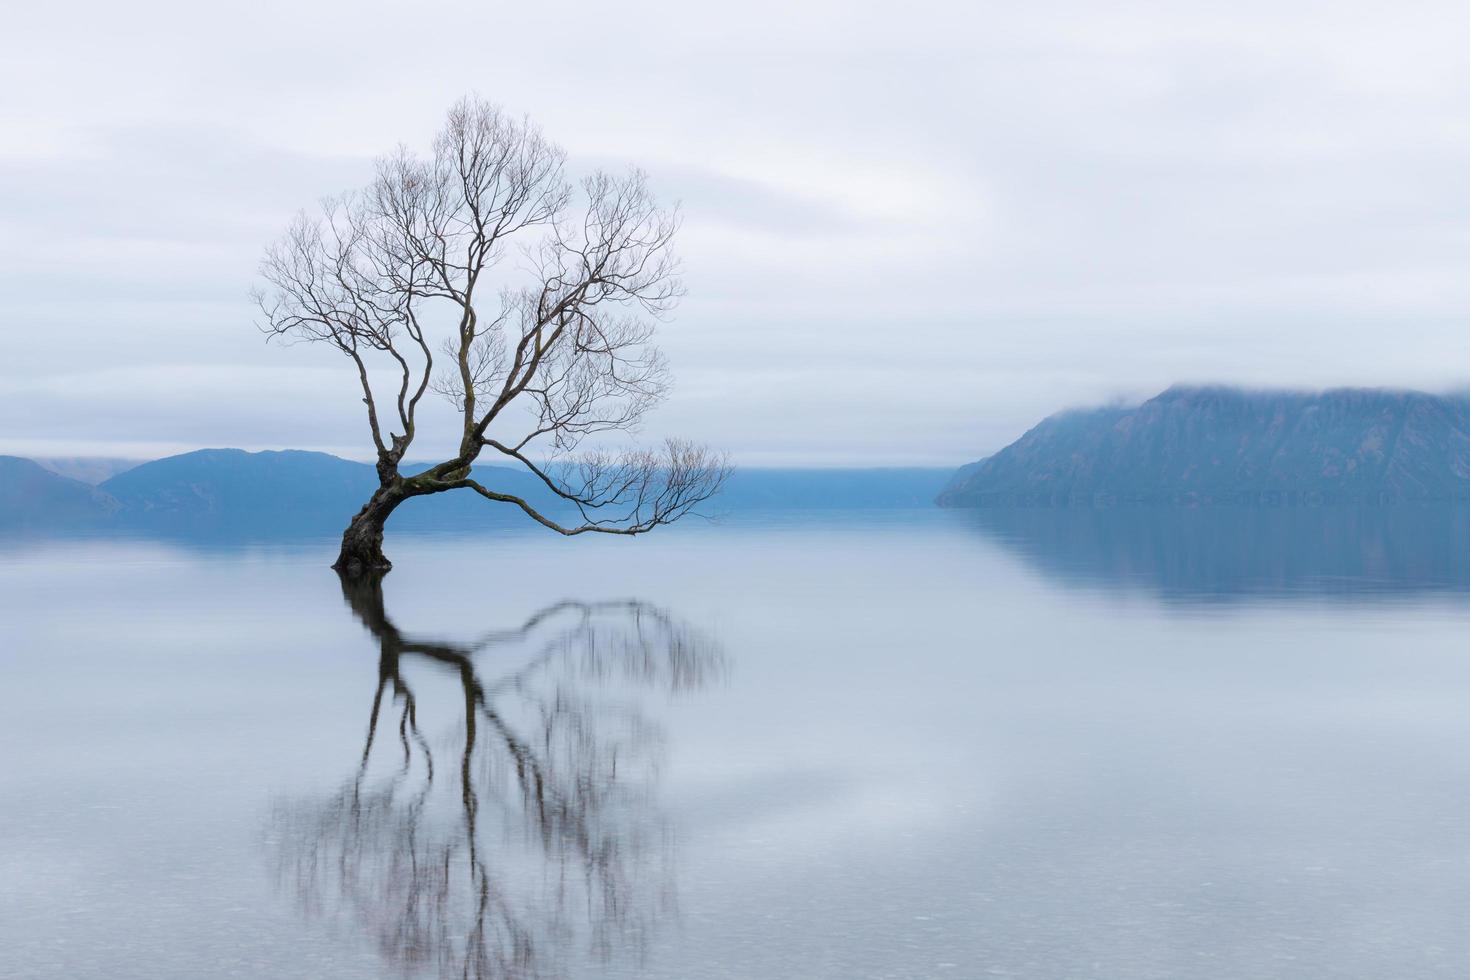 l'albero wanaka, il salice più famoso del lago wanaka in nuova zelanda foto